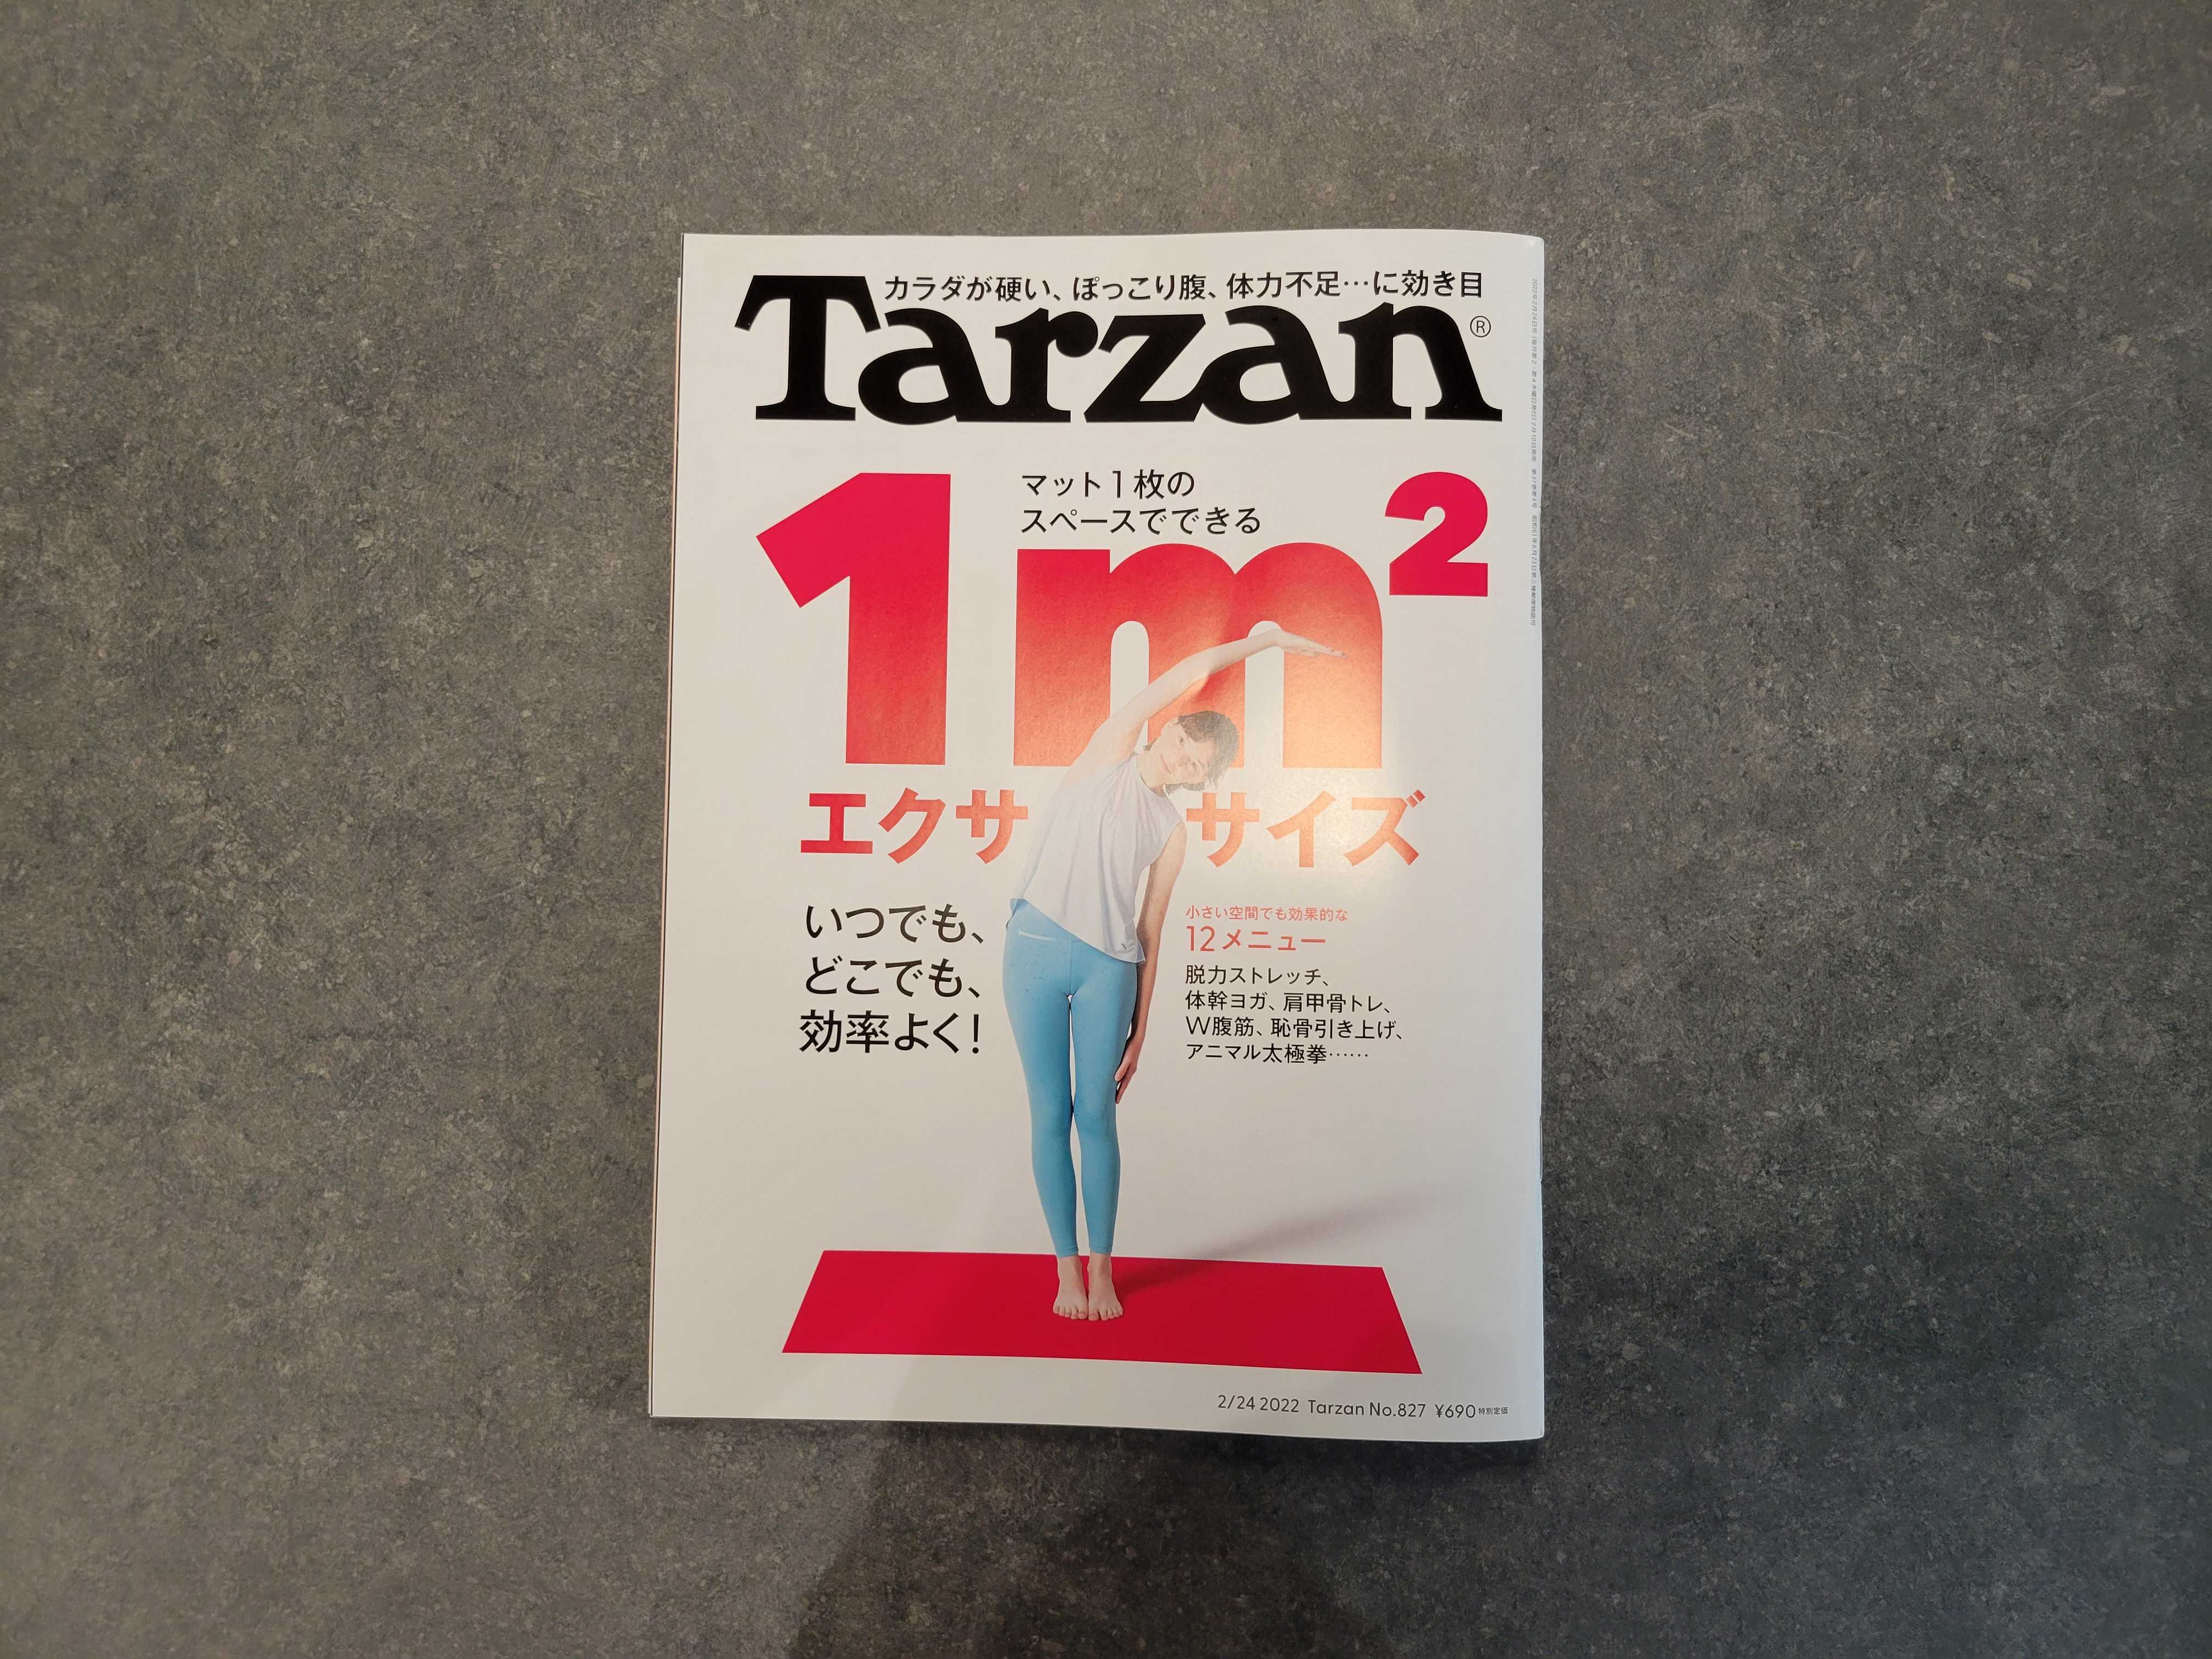 【メディア掲載】Tarzanワンマイルウェア「MIGARU」が掲載されました。